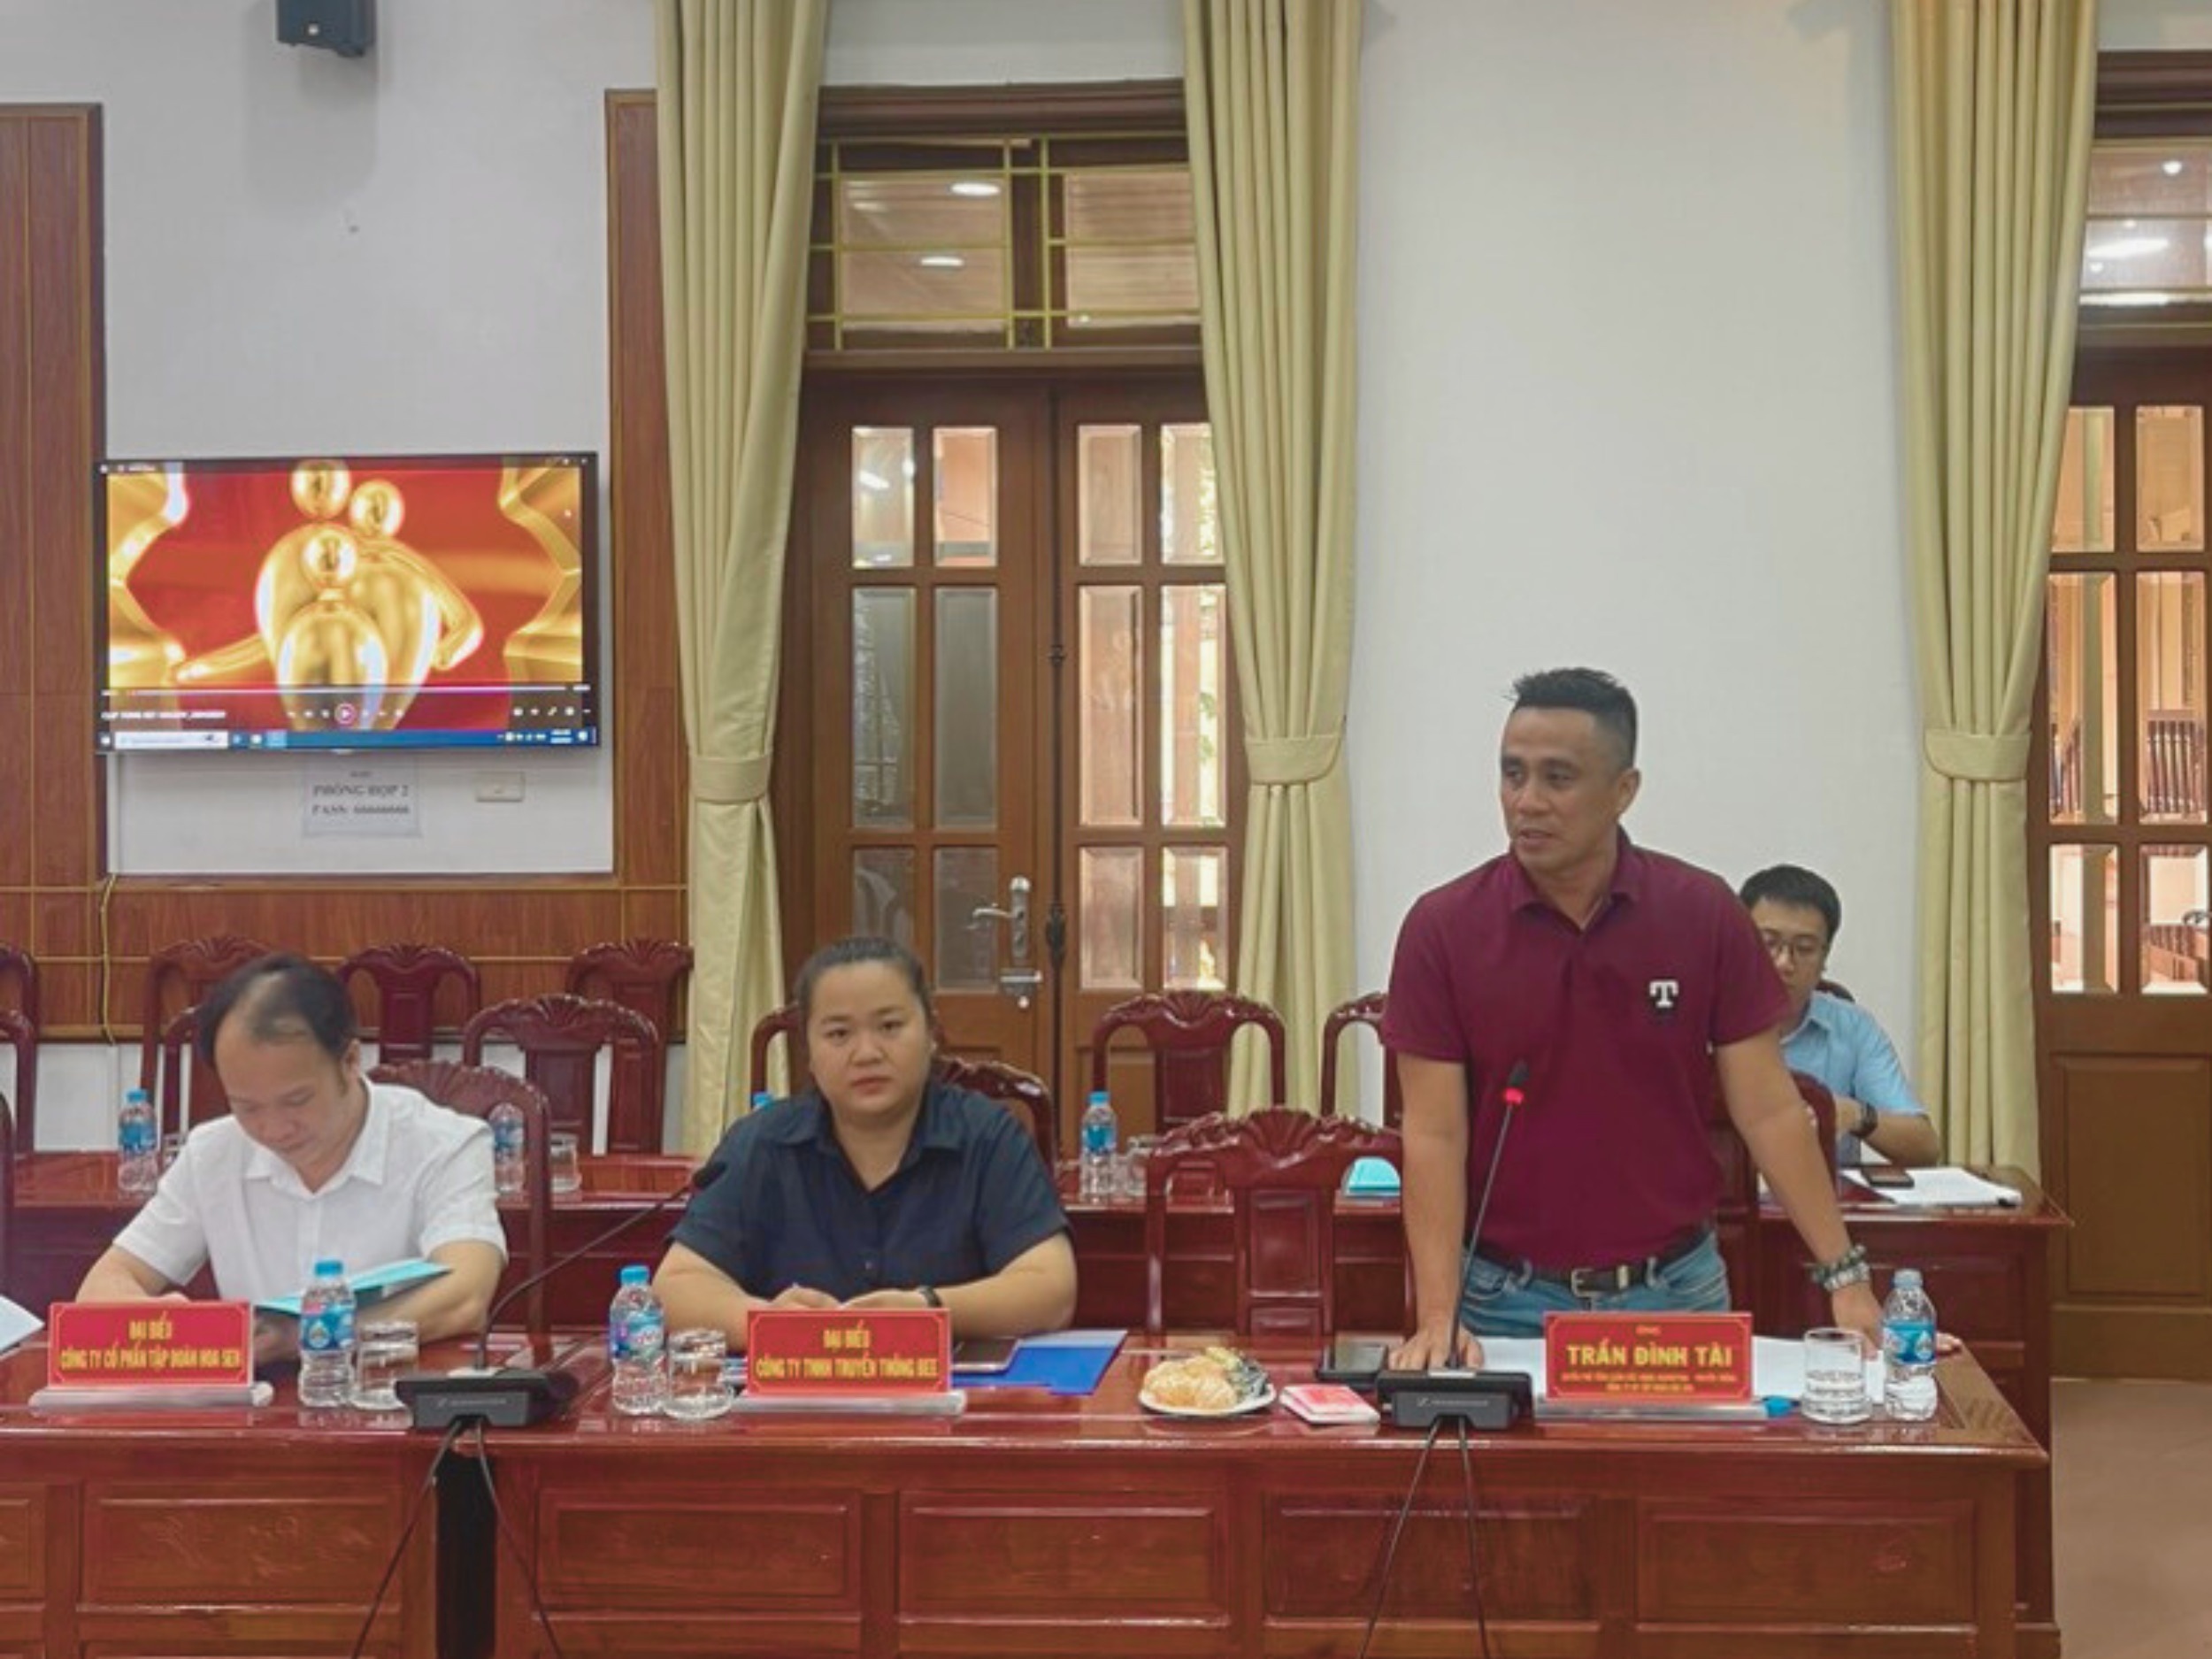 Ông Trần Đình Tài – Đại diện phía Tập đoàn Hoa Sen cũng nêu lên những ý kiến của mình trong cuộc họp